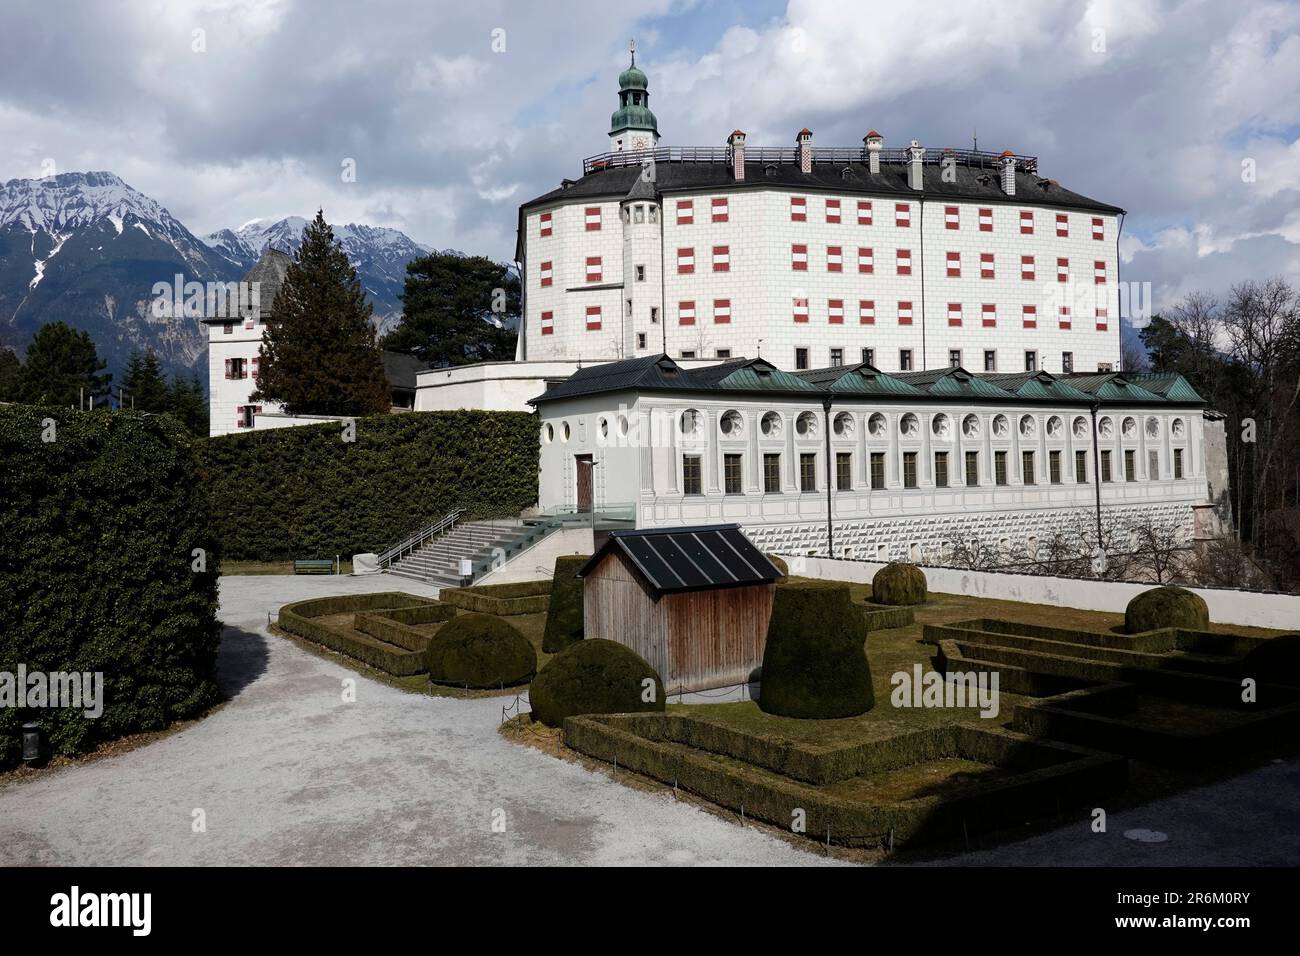 Schloss Ambras, un castillo y palacio renacentista situado en las colinas sobre Innsbruck, Austria, Europa Foto de stock